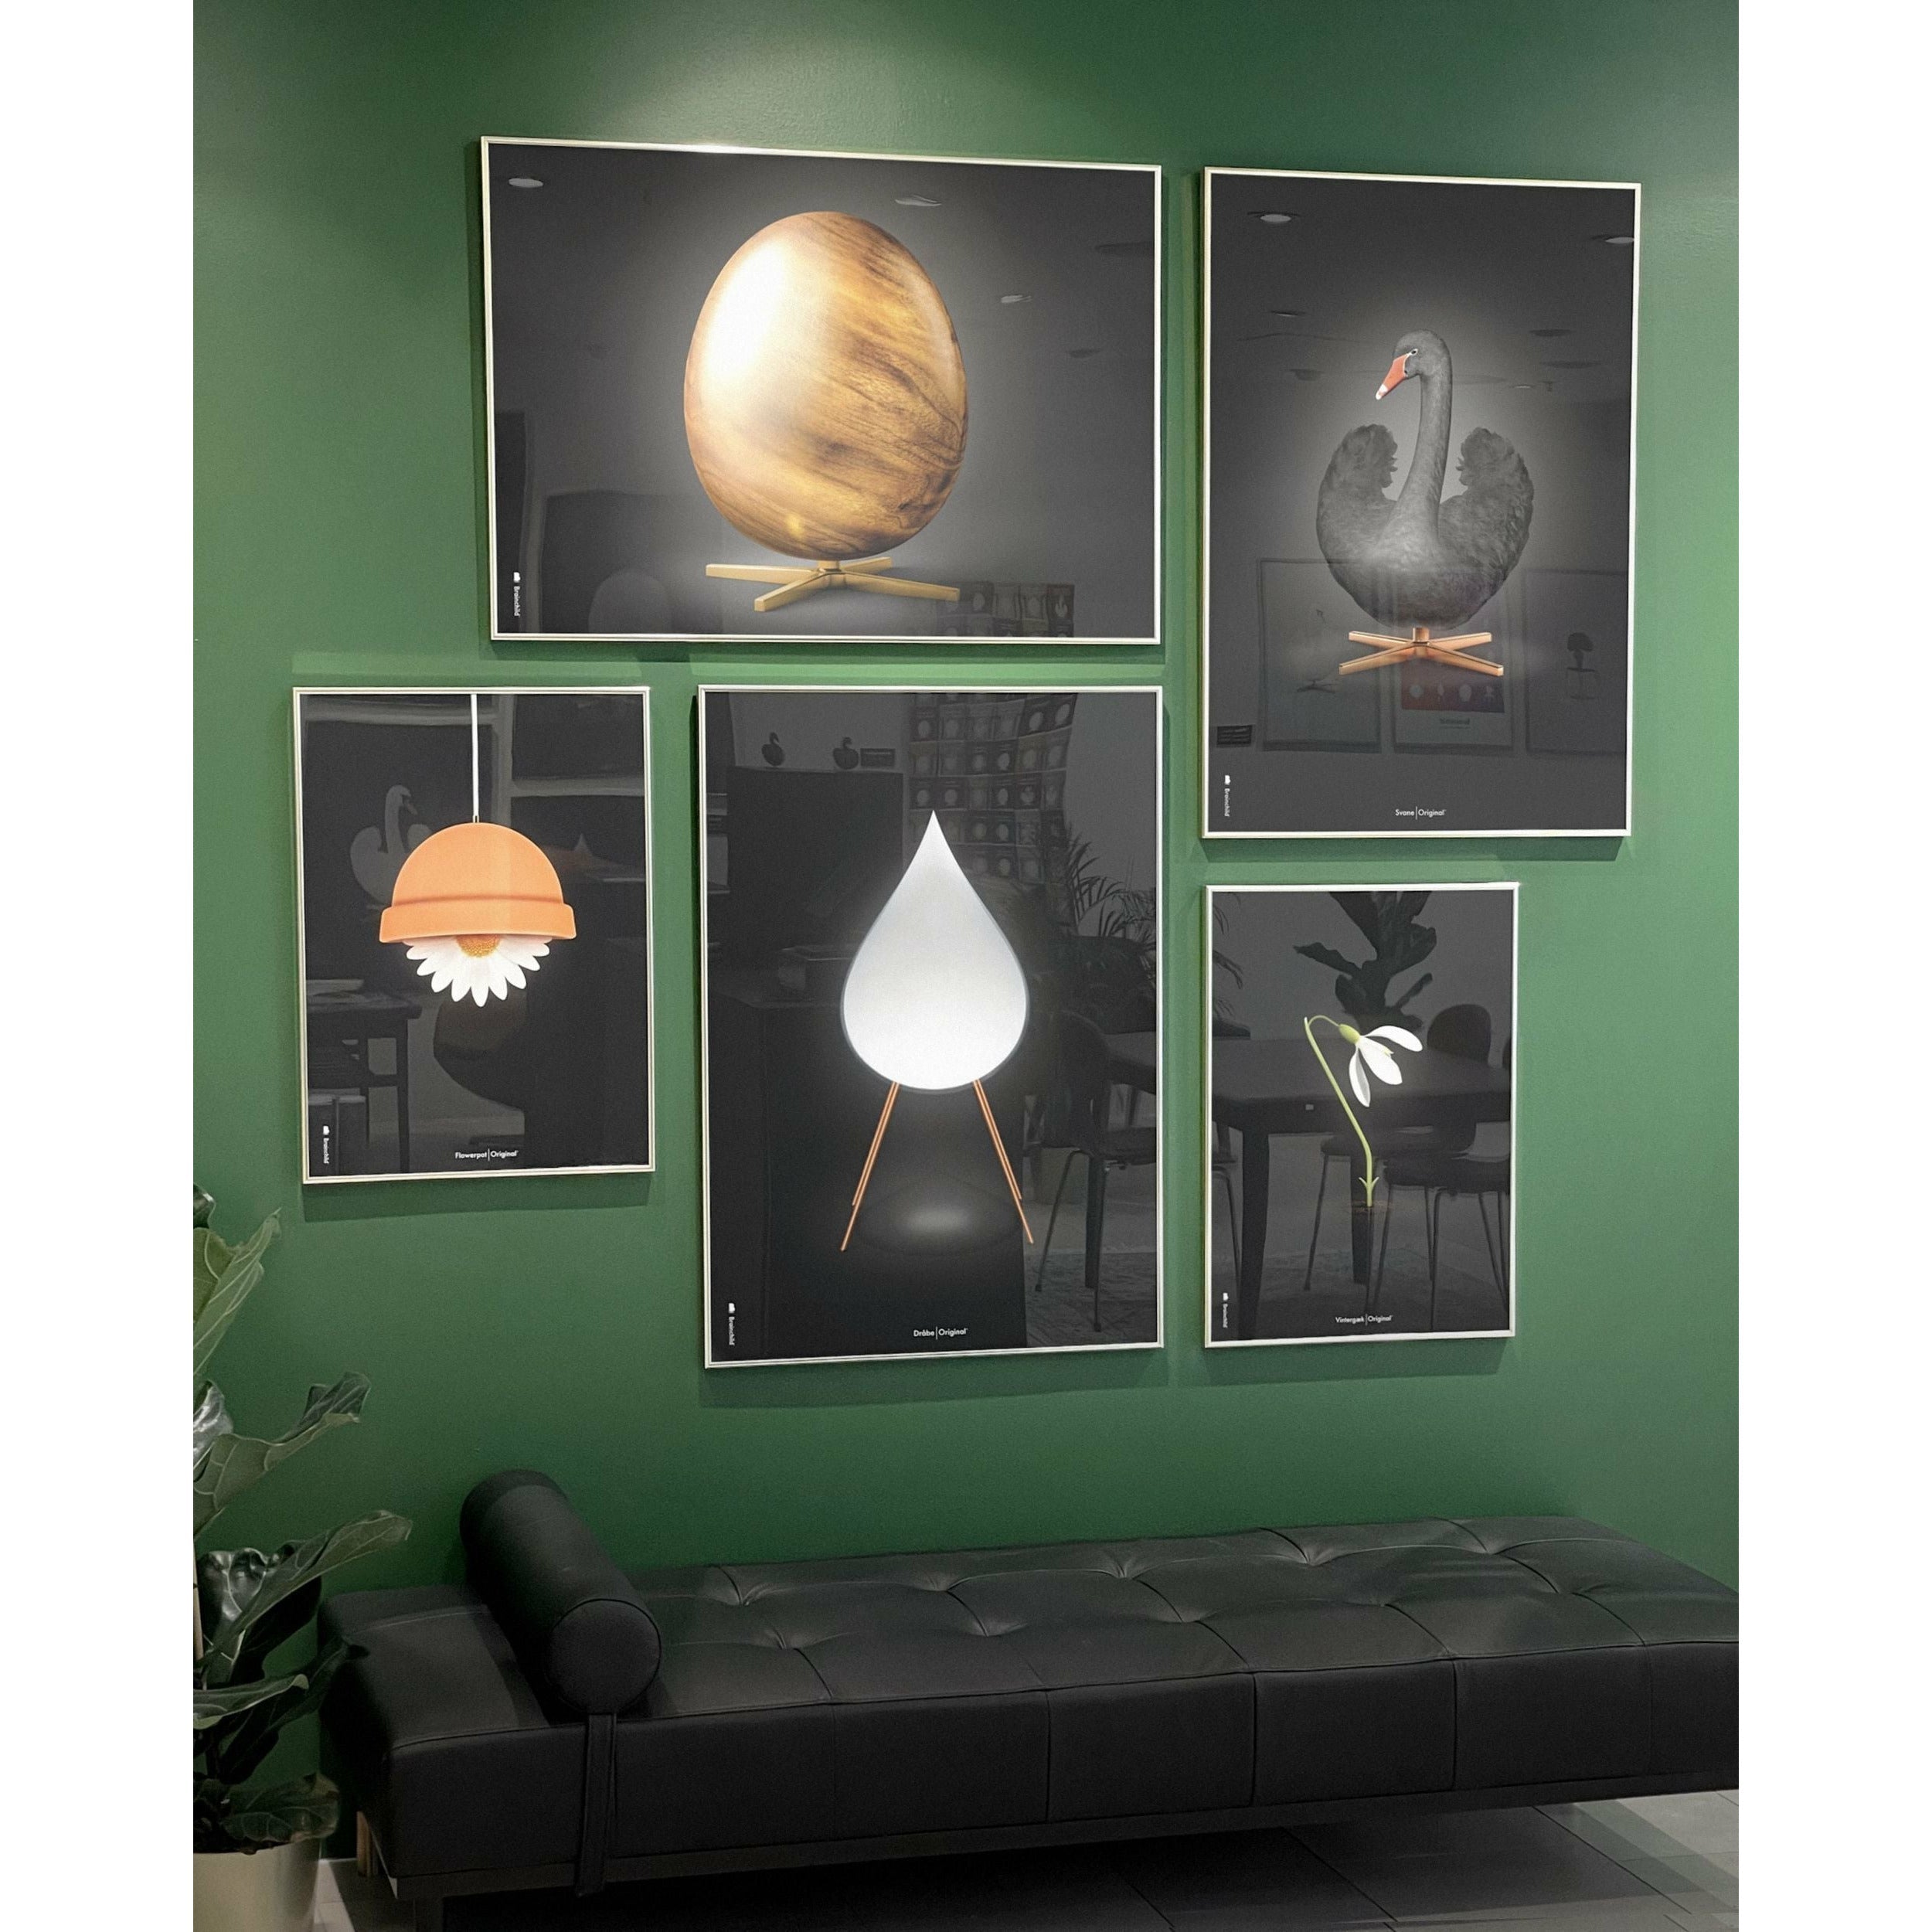 brainchild Eierkruisindeling Poster zonder frame 70 x100 cm, zwart